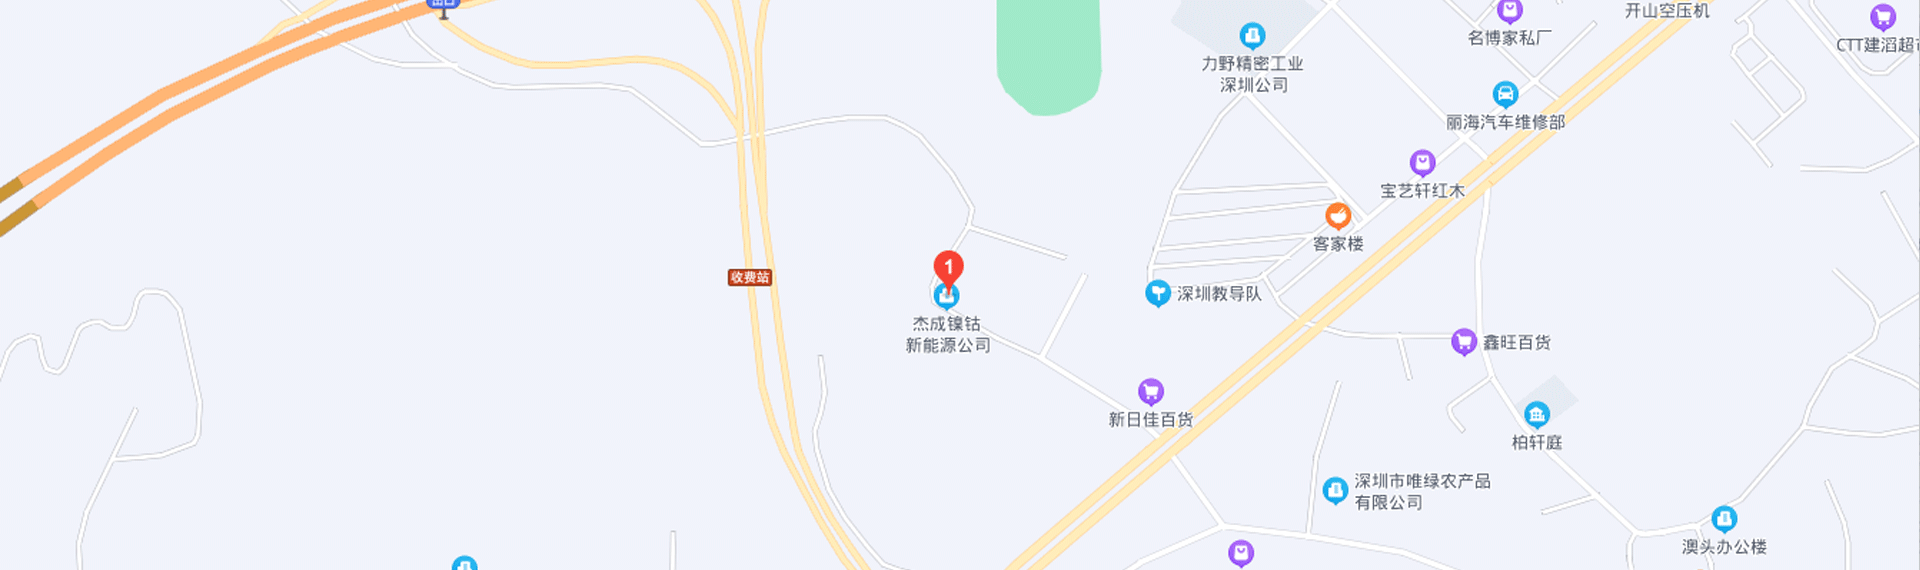 深圳总部